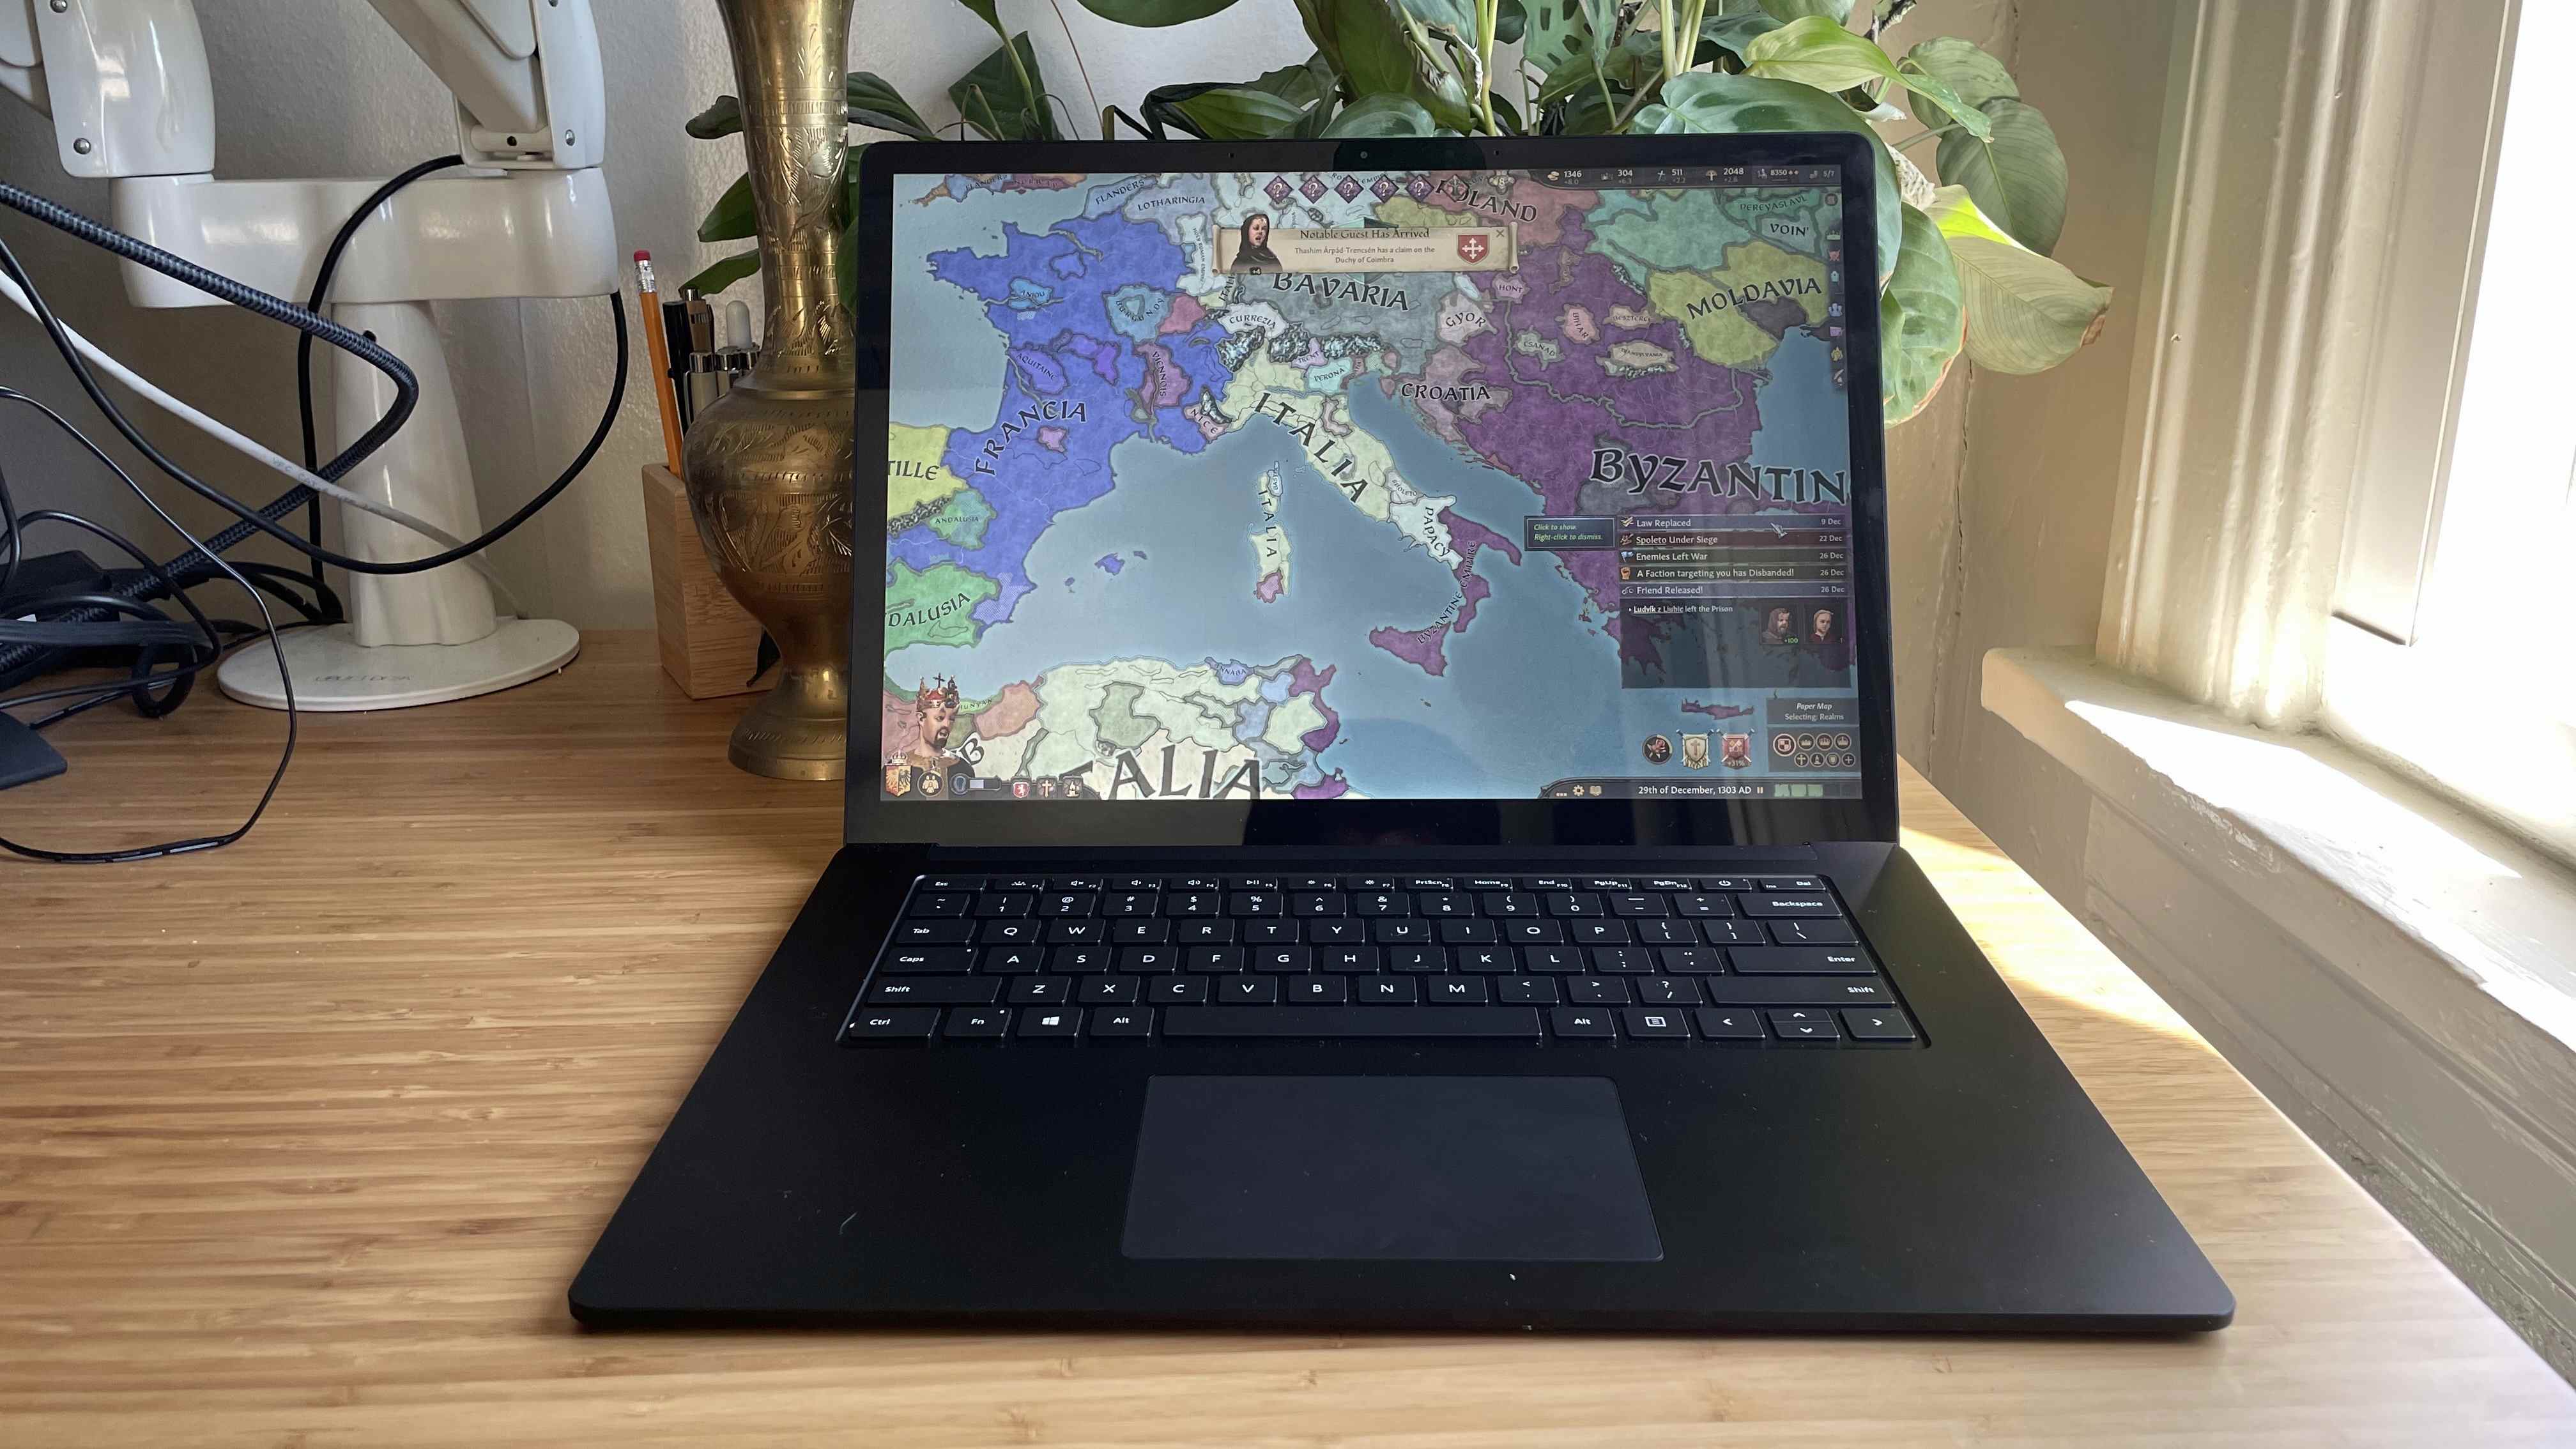 Unité d'examen Microsoft Surface Laptop 4 (15 pouces, AMD) sur le bureau avec Crusader Kings 3 en cours d'exécution